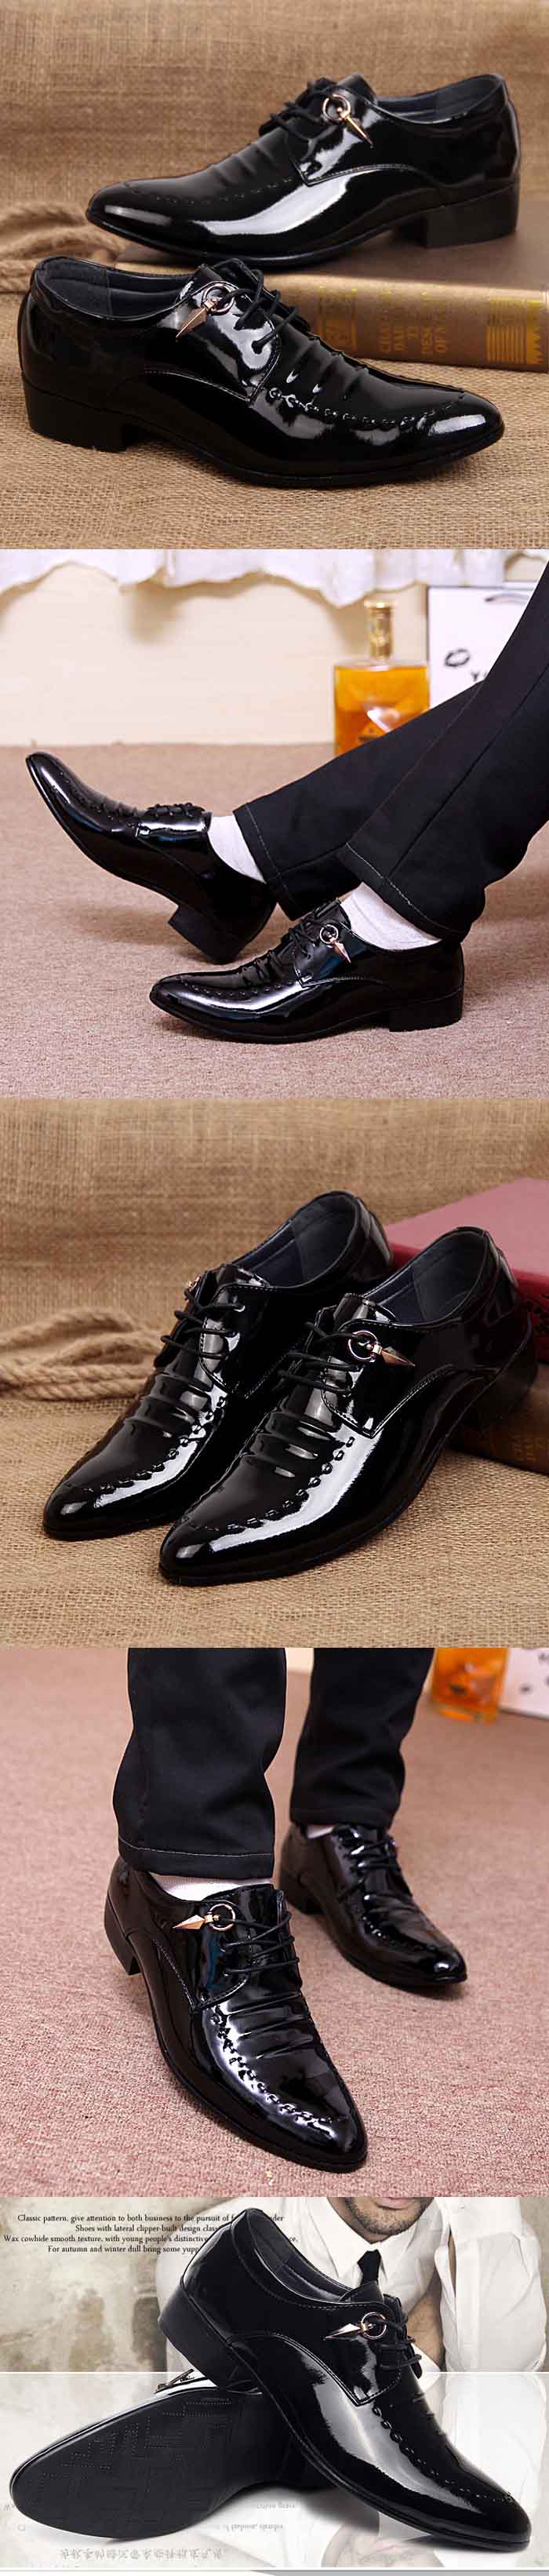 jual sepatu kerja pria model glossy , maksimalkan penampilan anda dengan koleksi sepatu kerja pantofel ala korea di pfp store